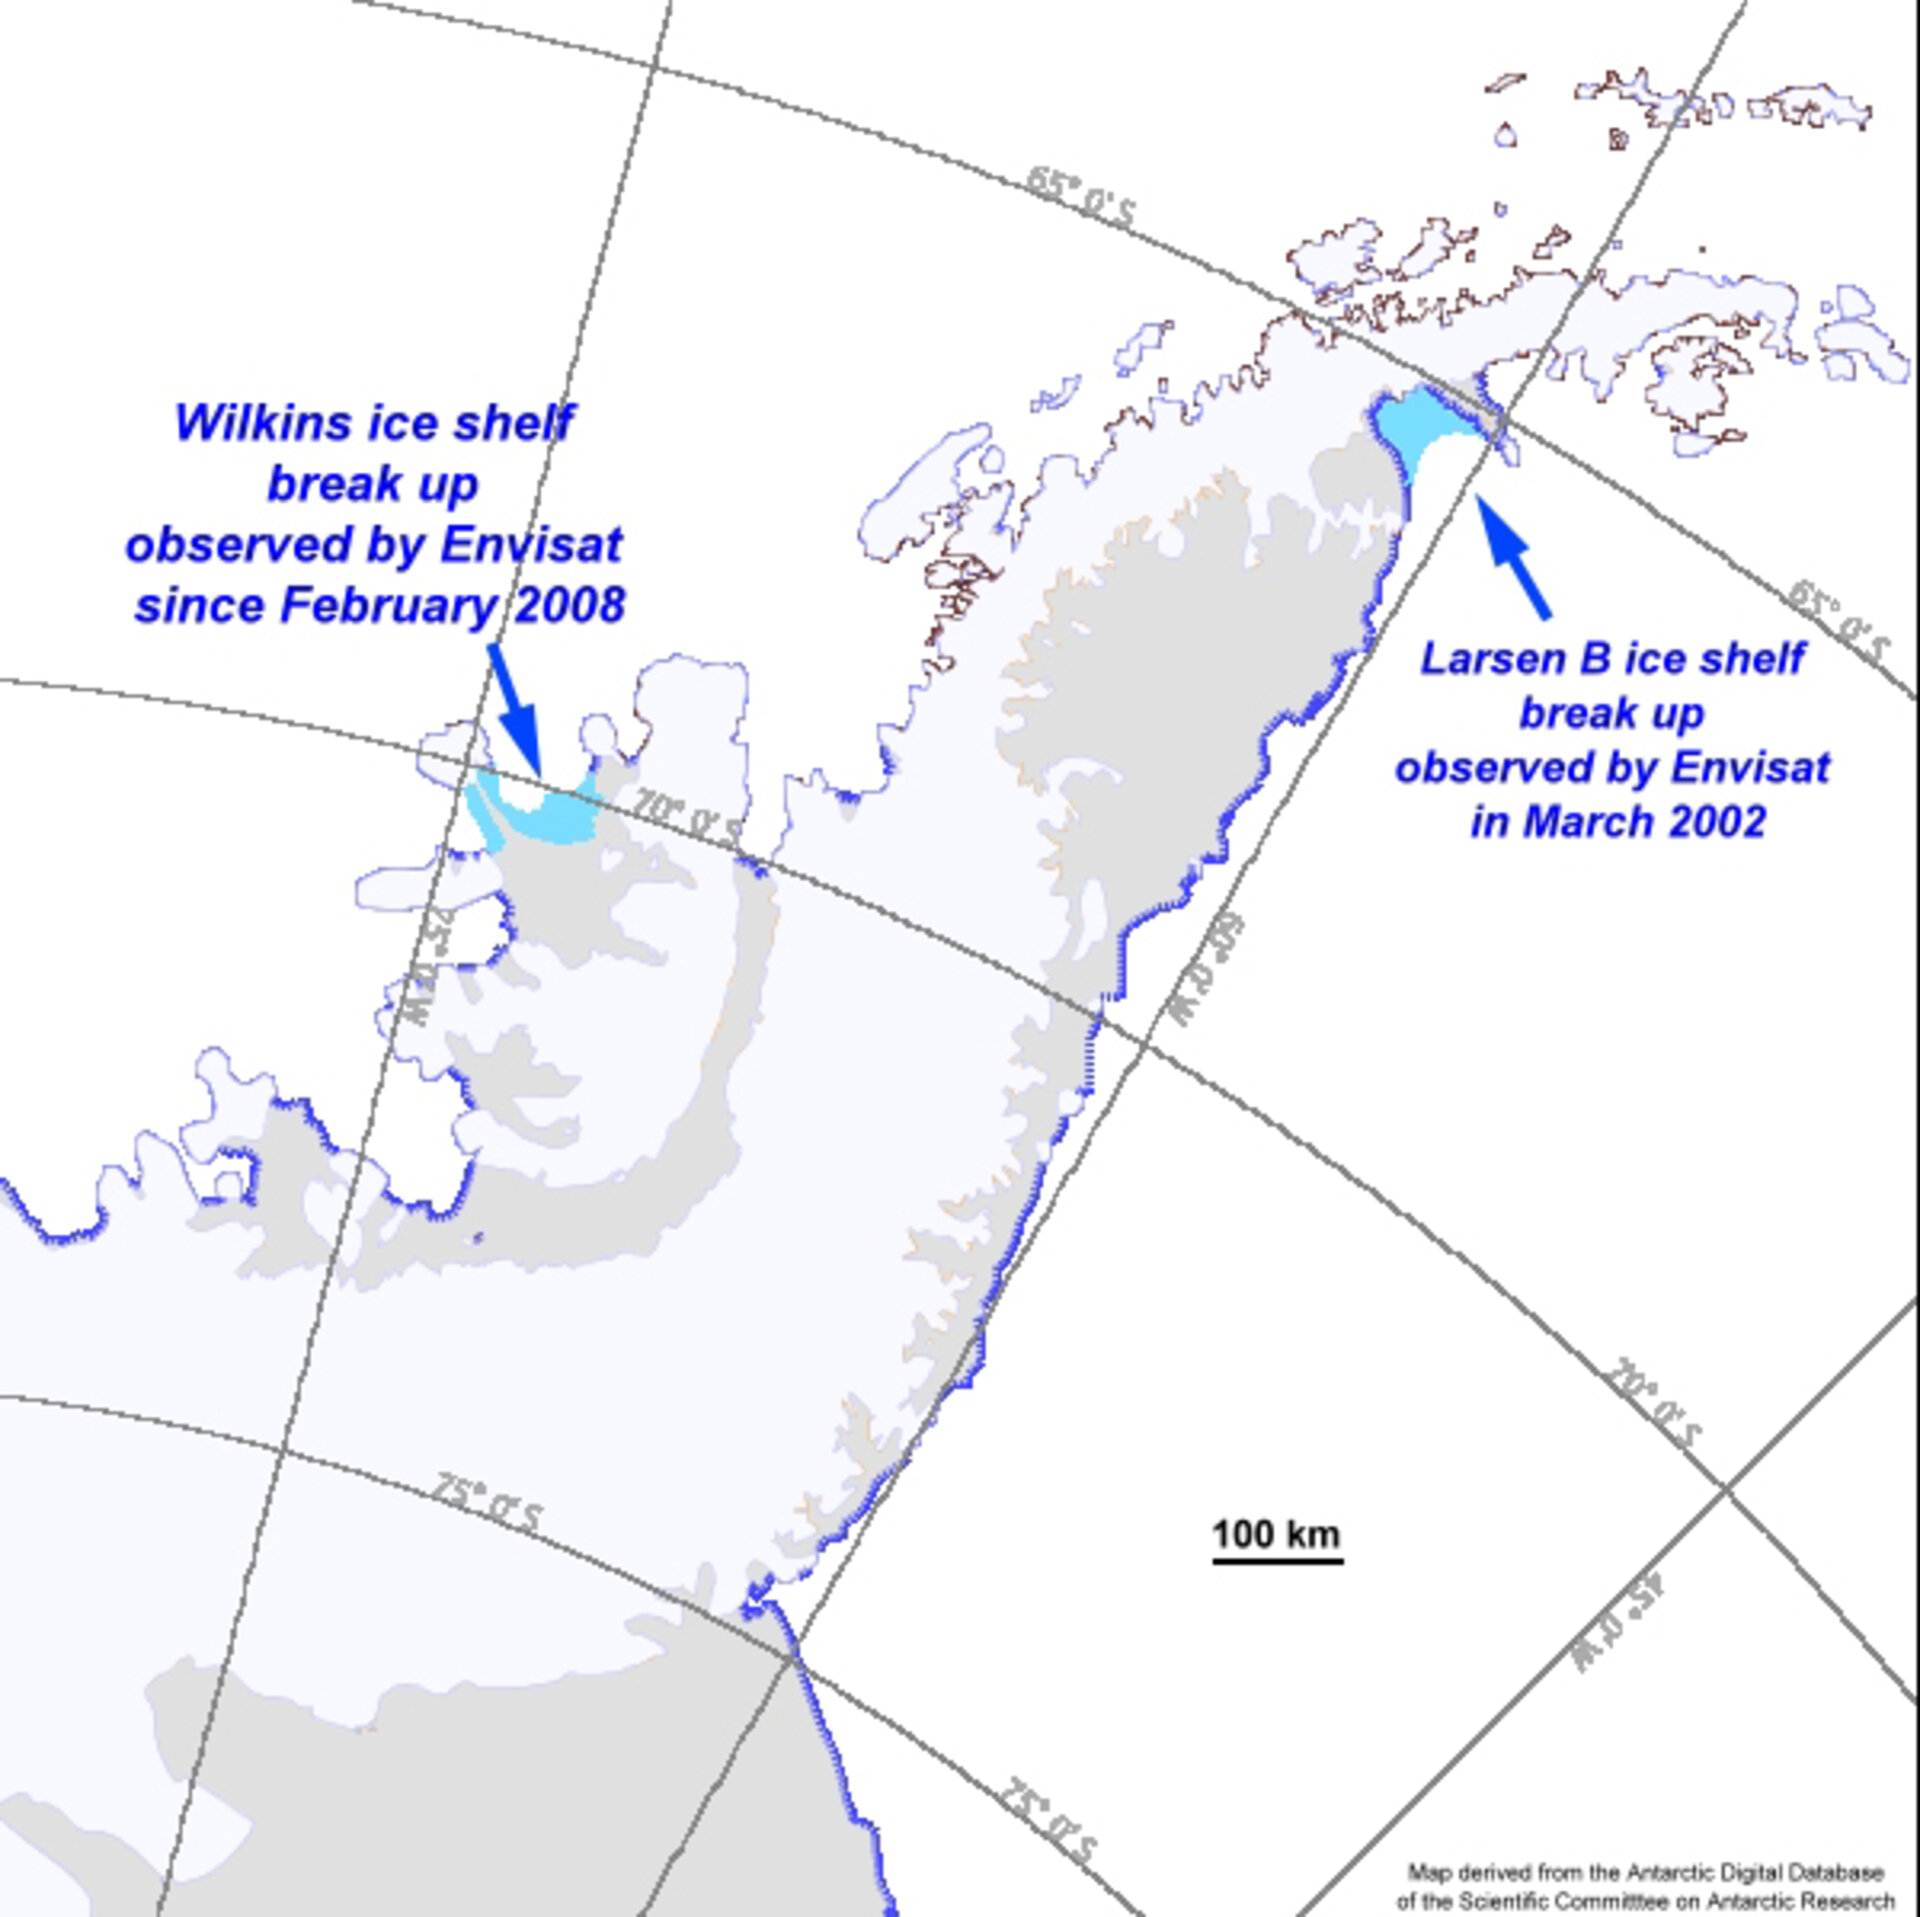 Break-ups of Larsen-B and Wilkins ice shelves